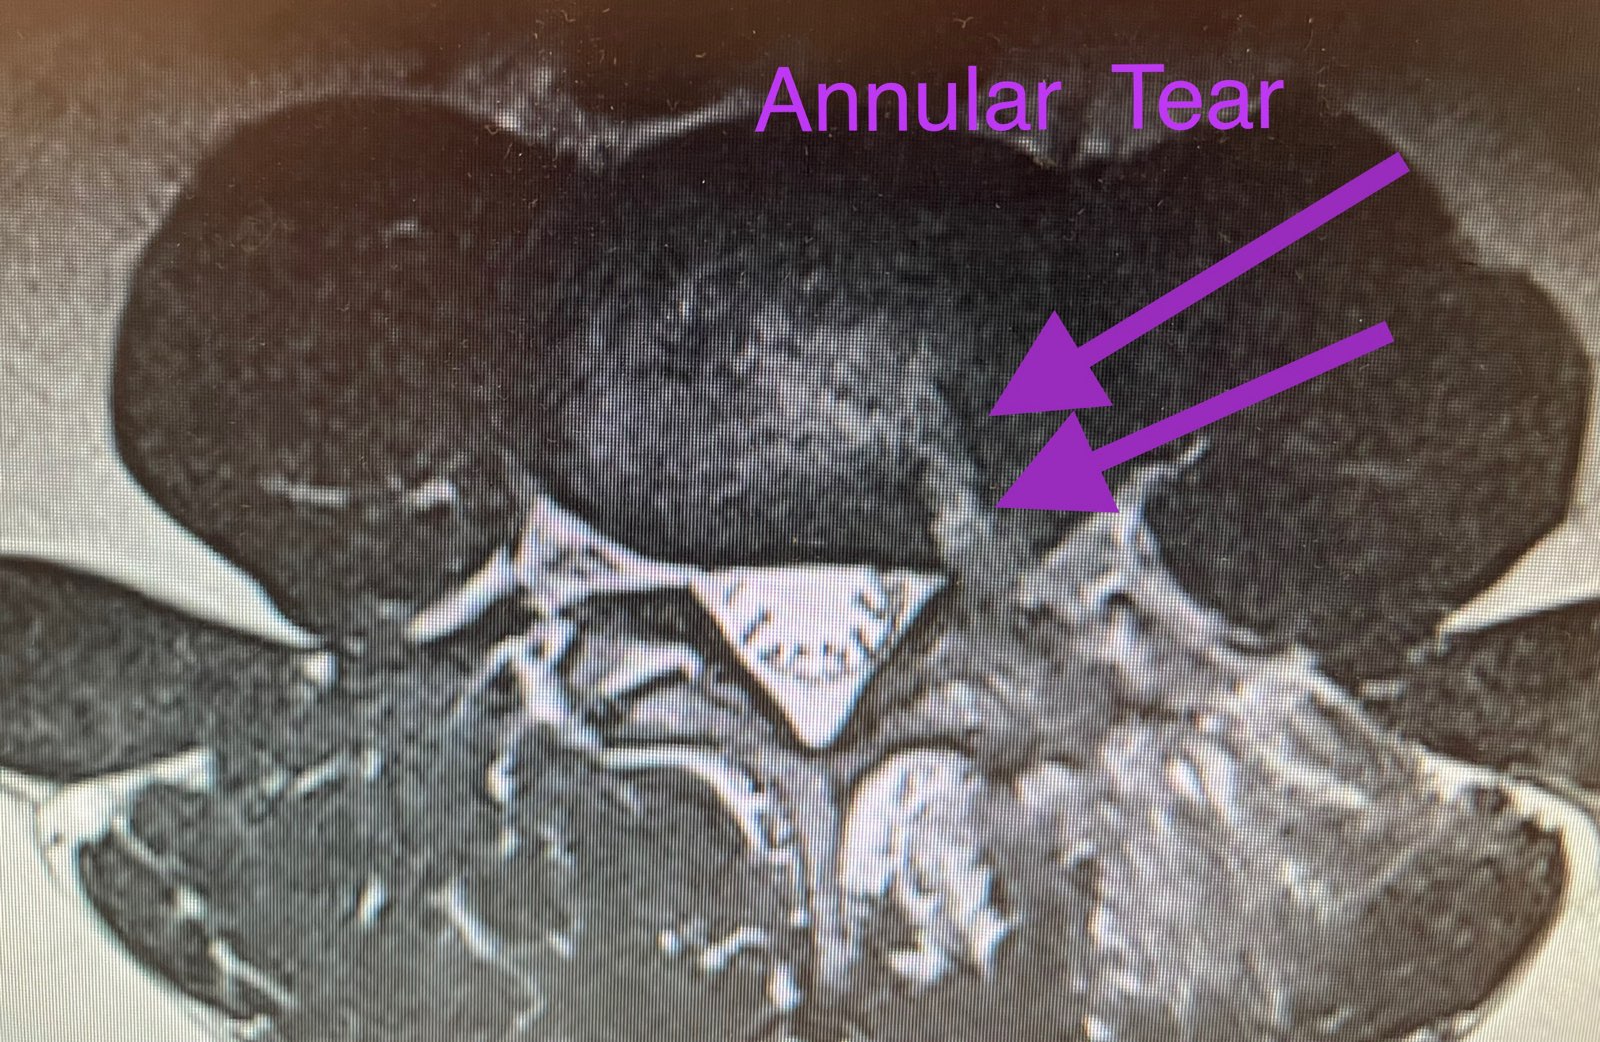 laser-spine-surgery-annular-tear